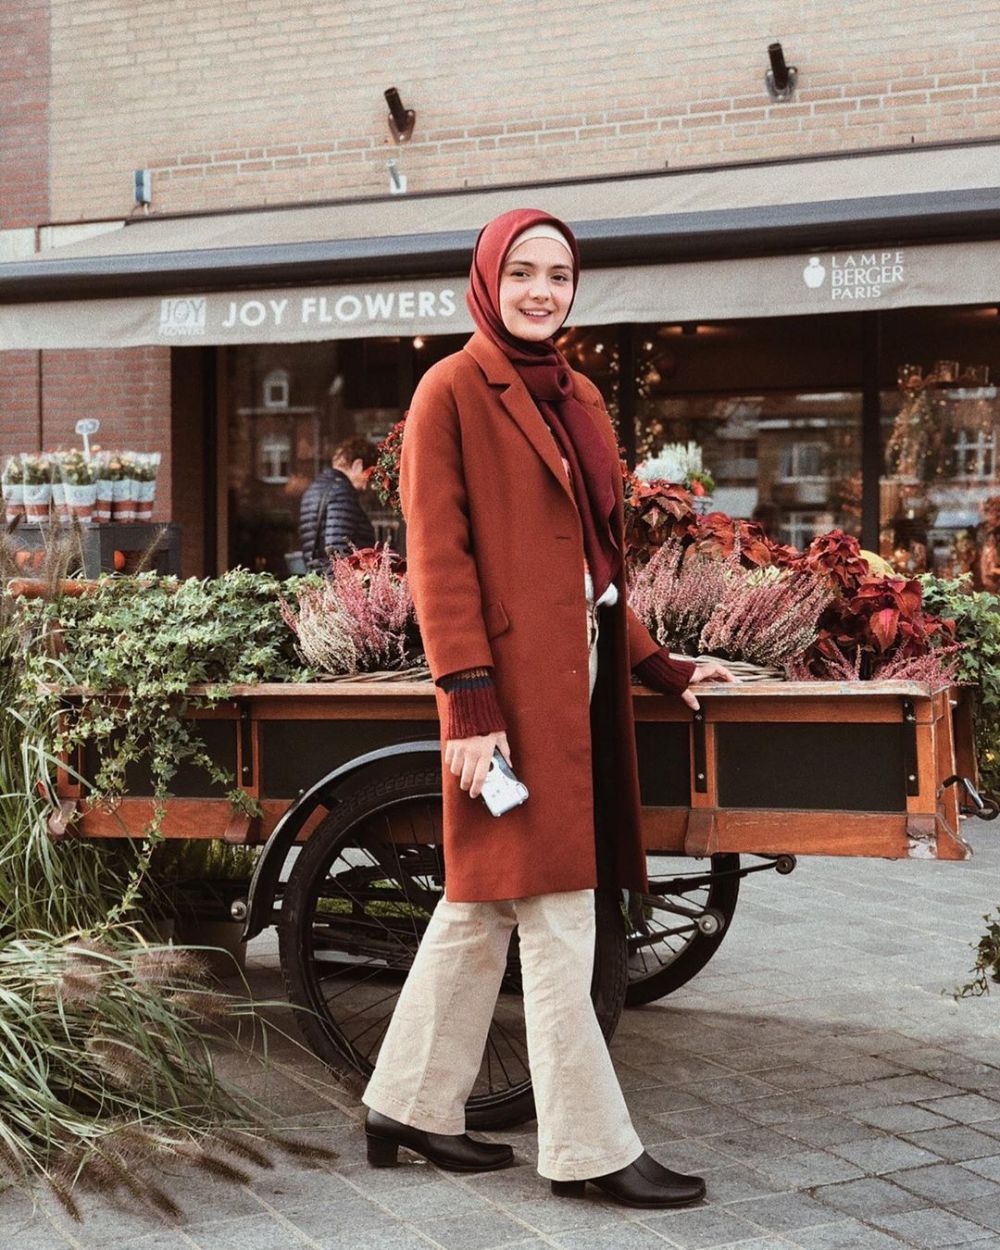 5 Potret Amanda Rawles pakai hijab, manglingi